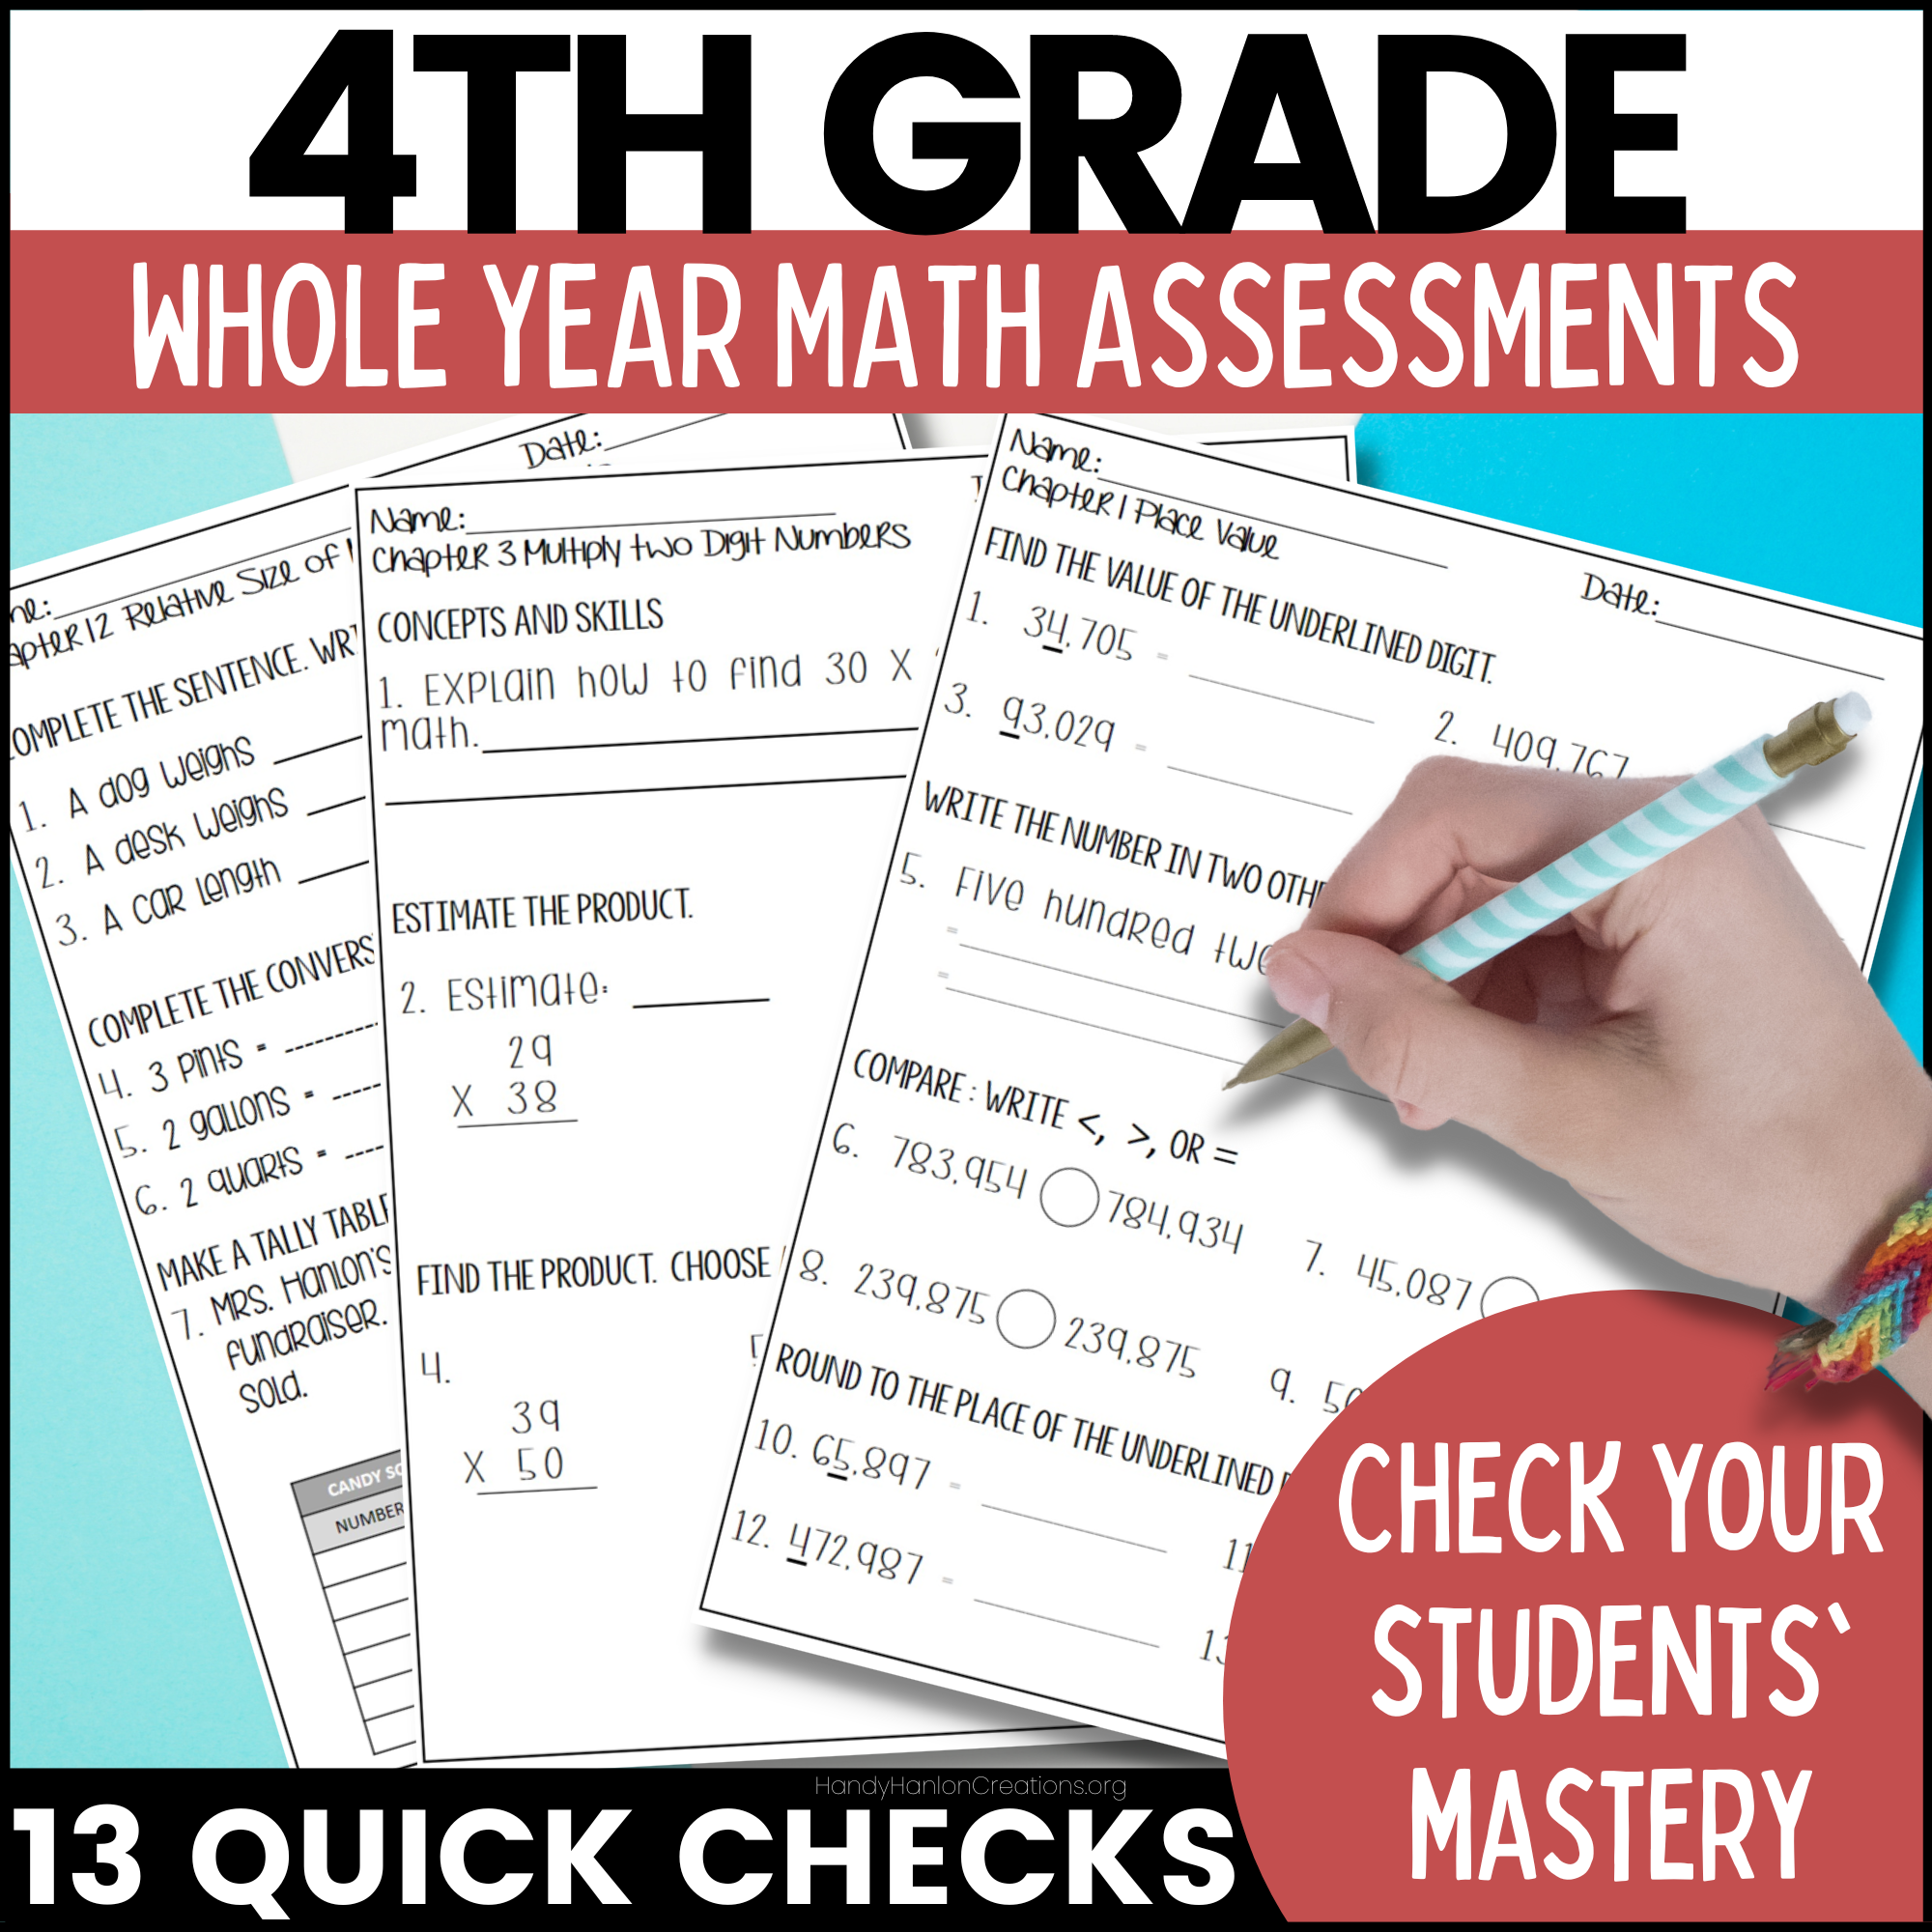 4th grade math assessments